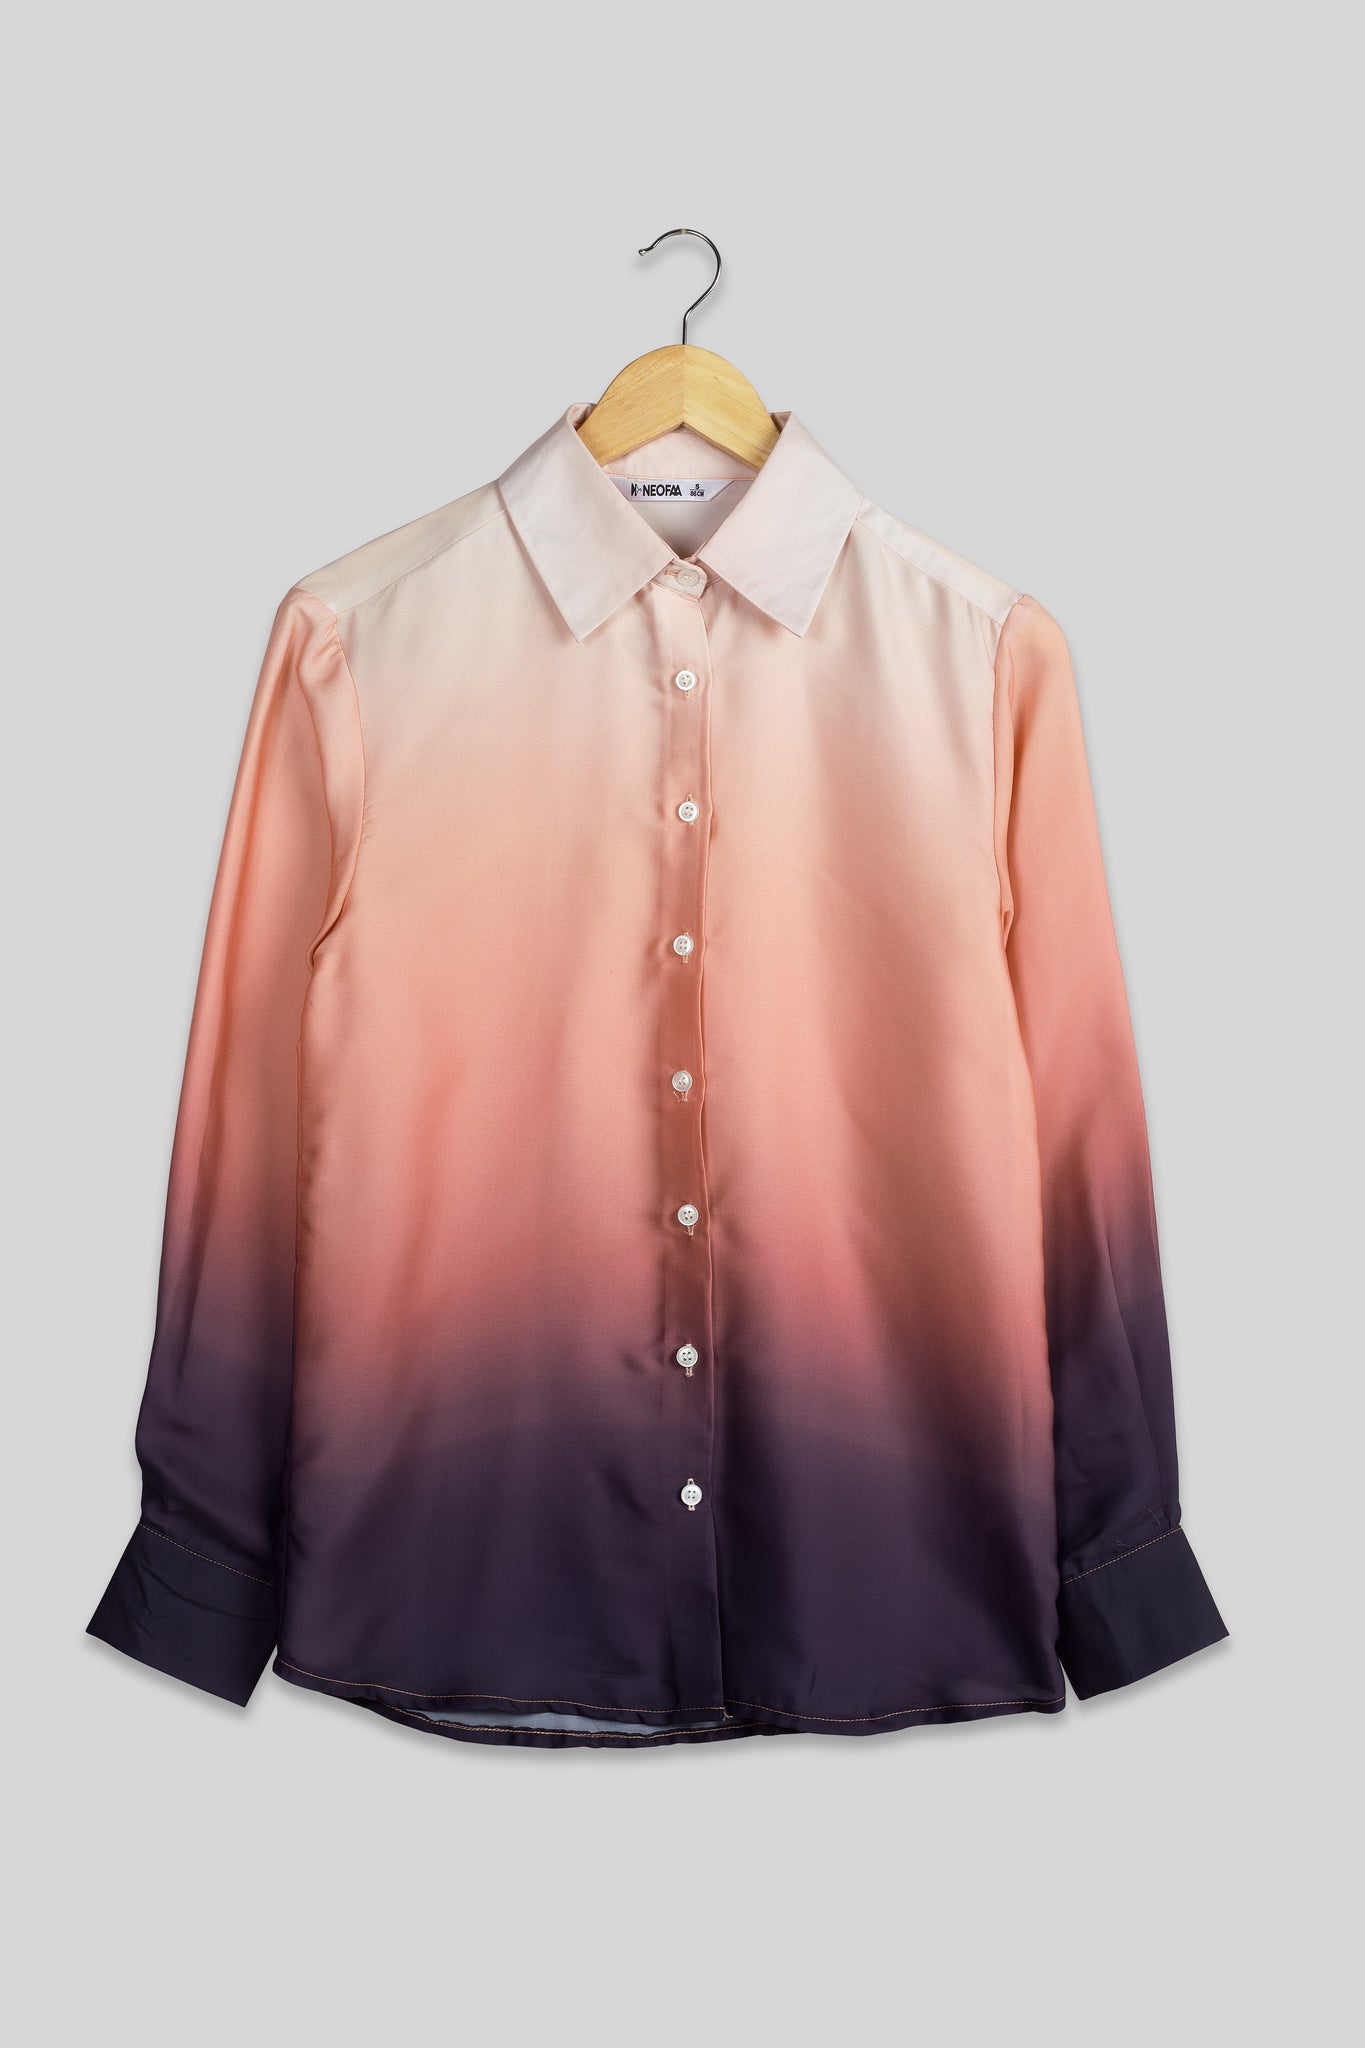 Designer Ombre Shirt For Women